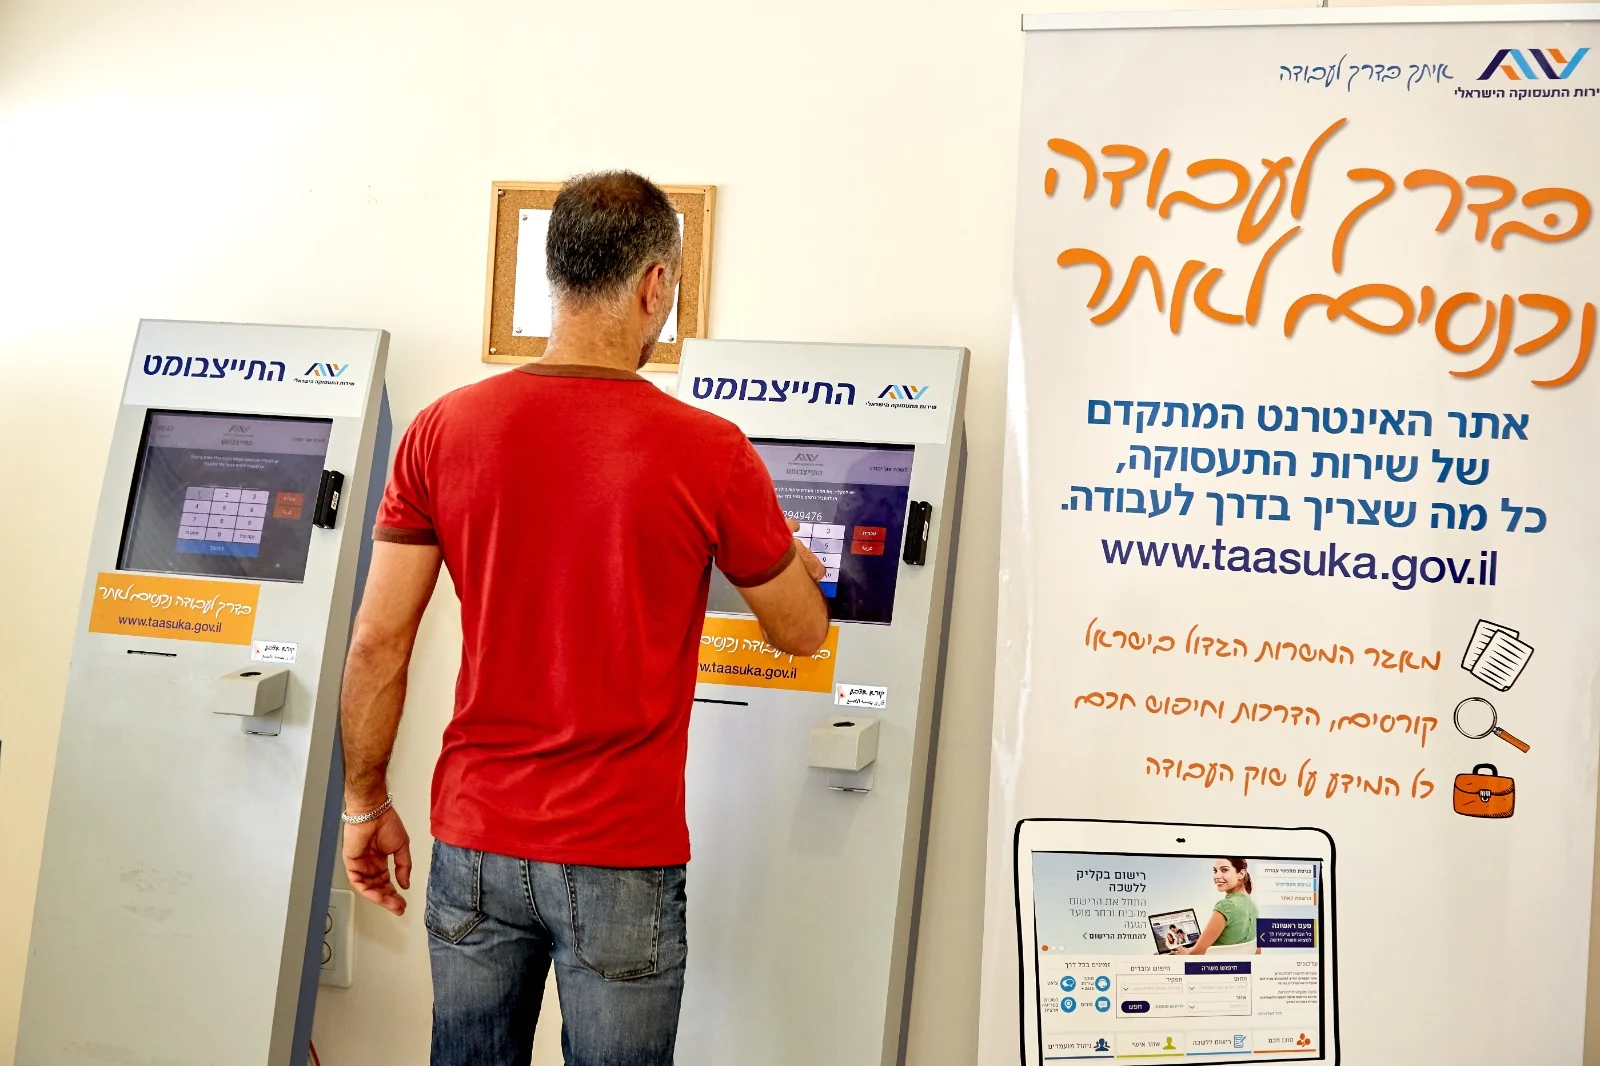 שירות התעסוקה הישראלי